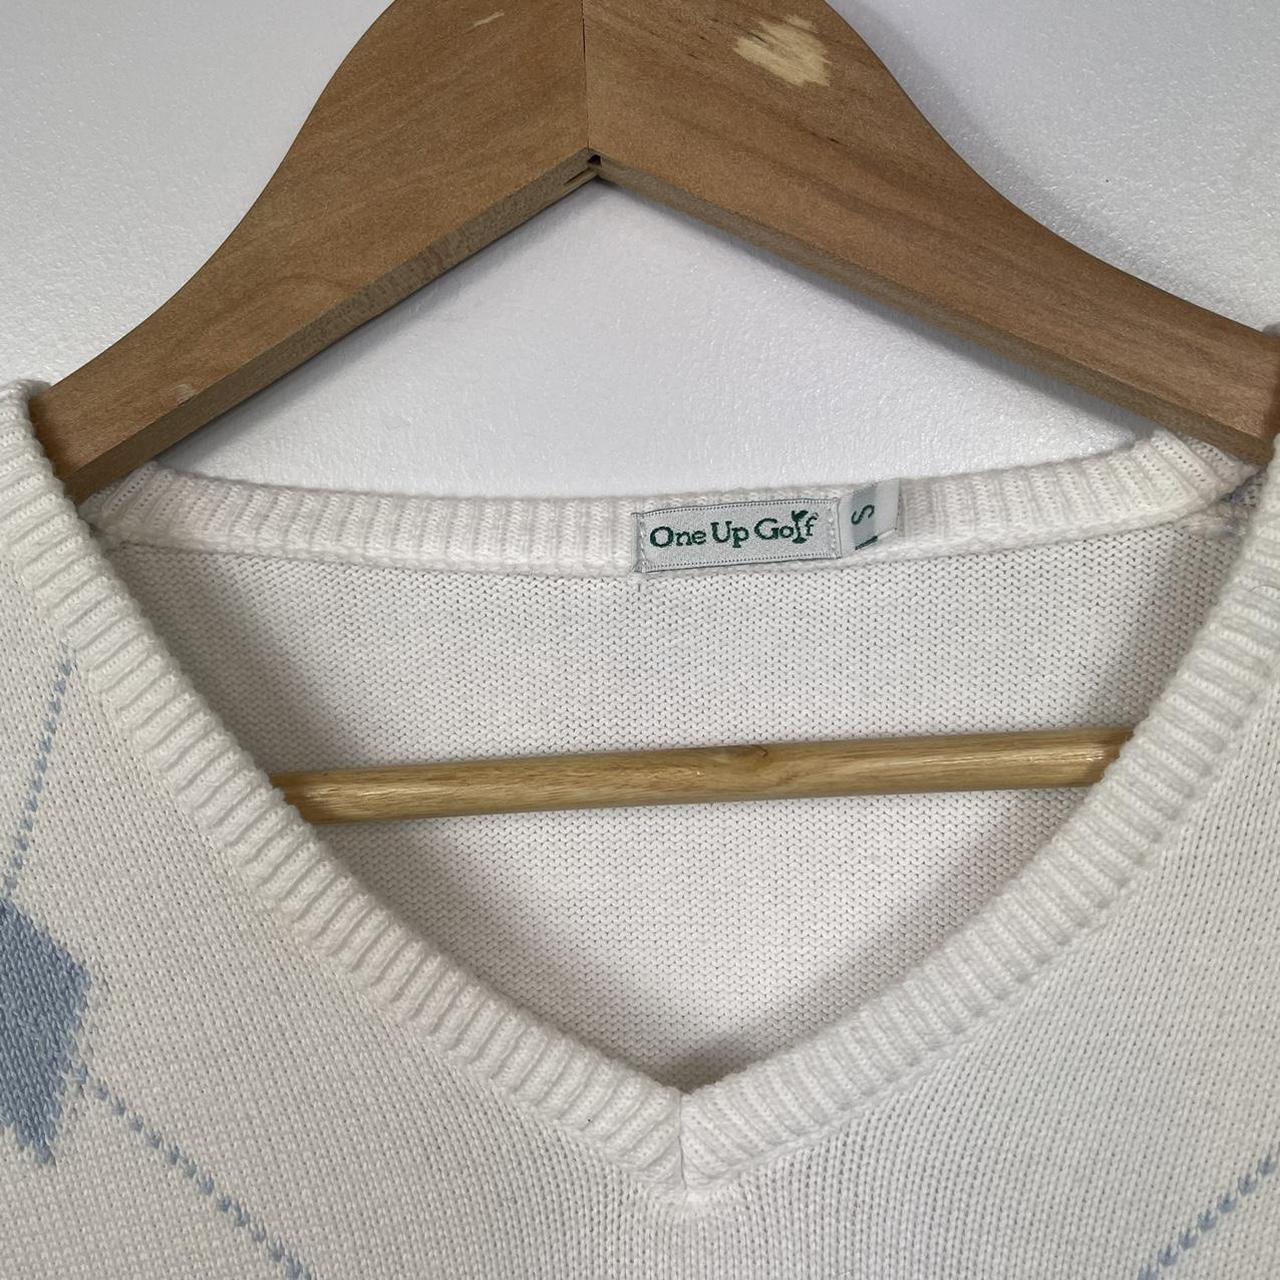 Product Image 3 - Vintage Y2K Argyle White Jumper/Knitwear

-